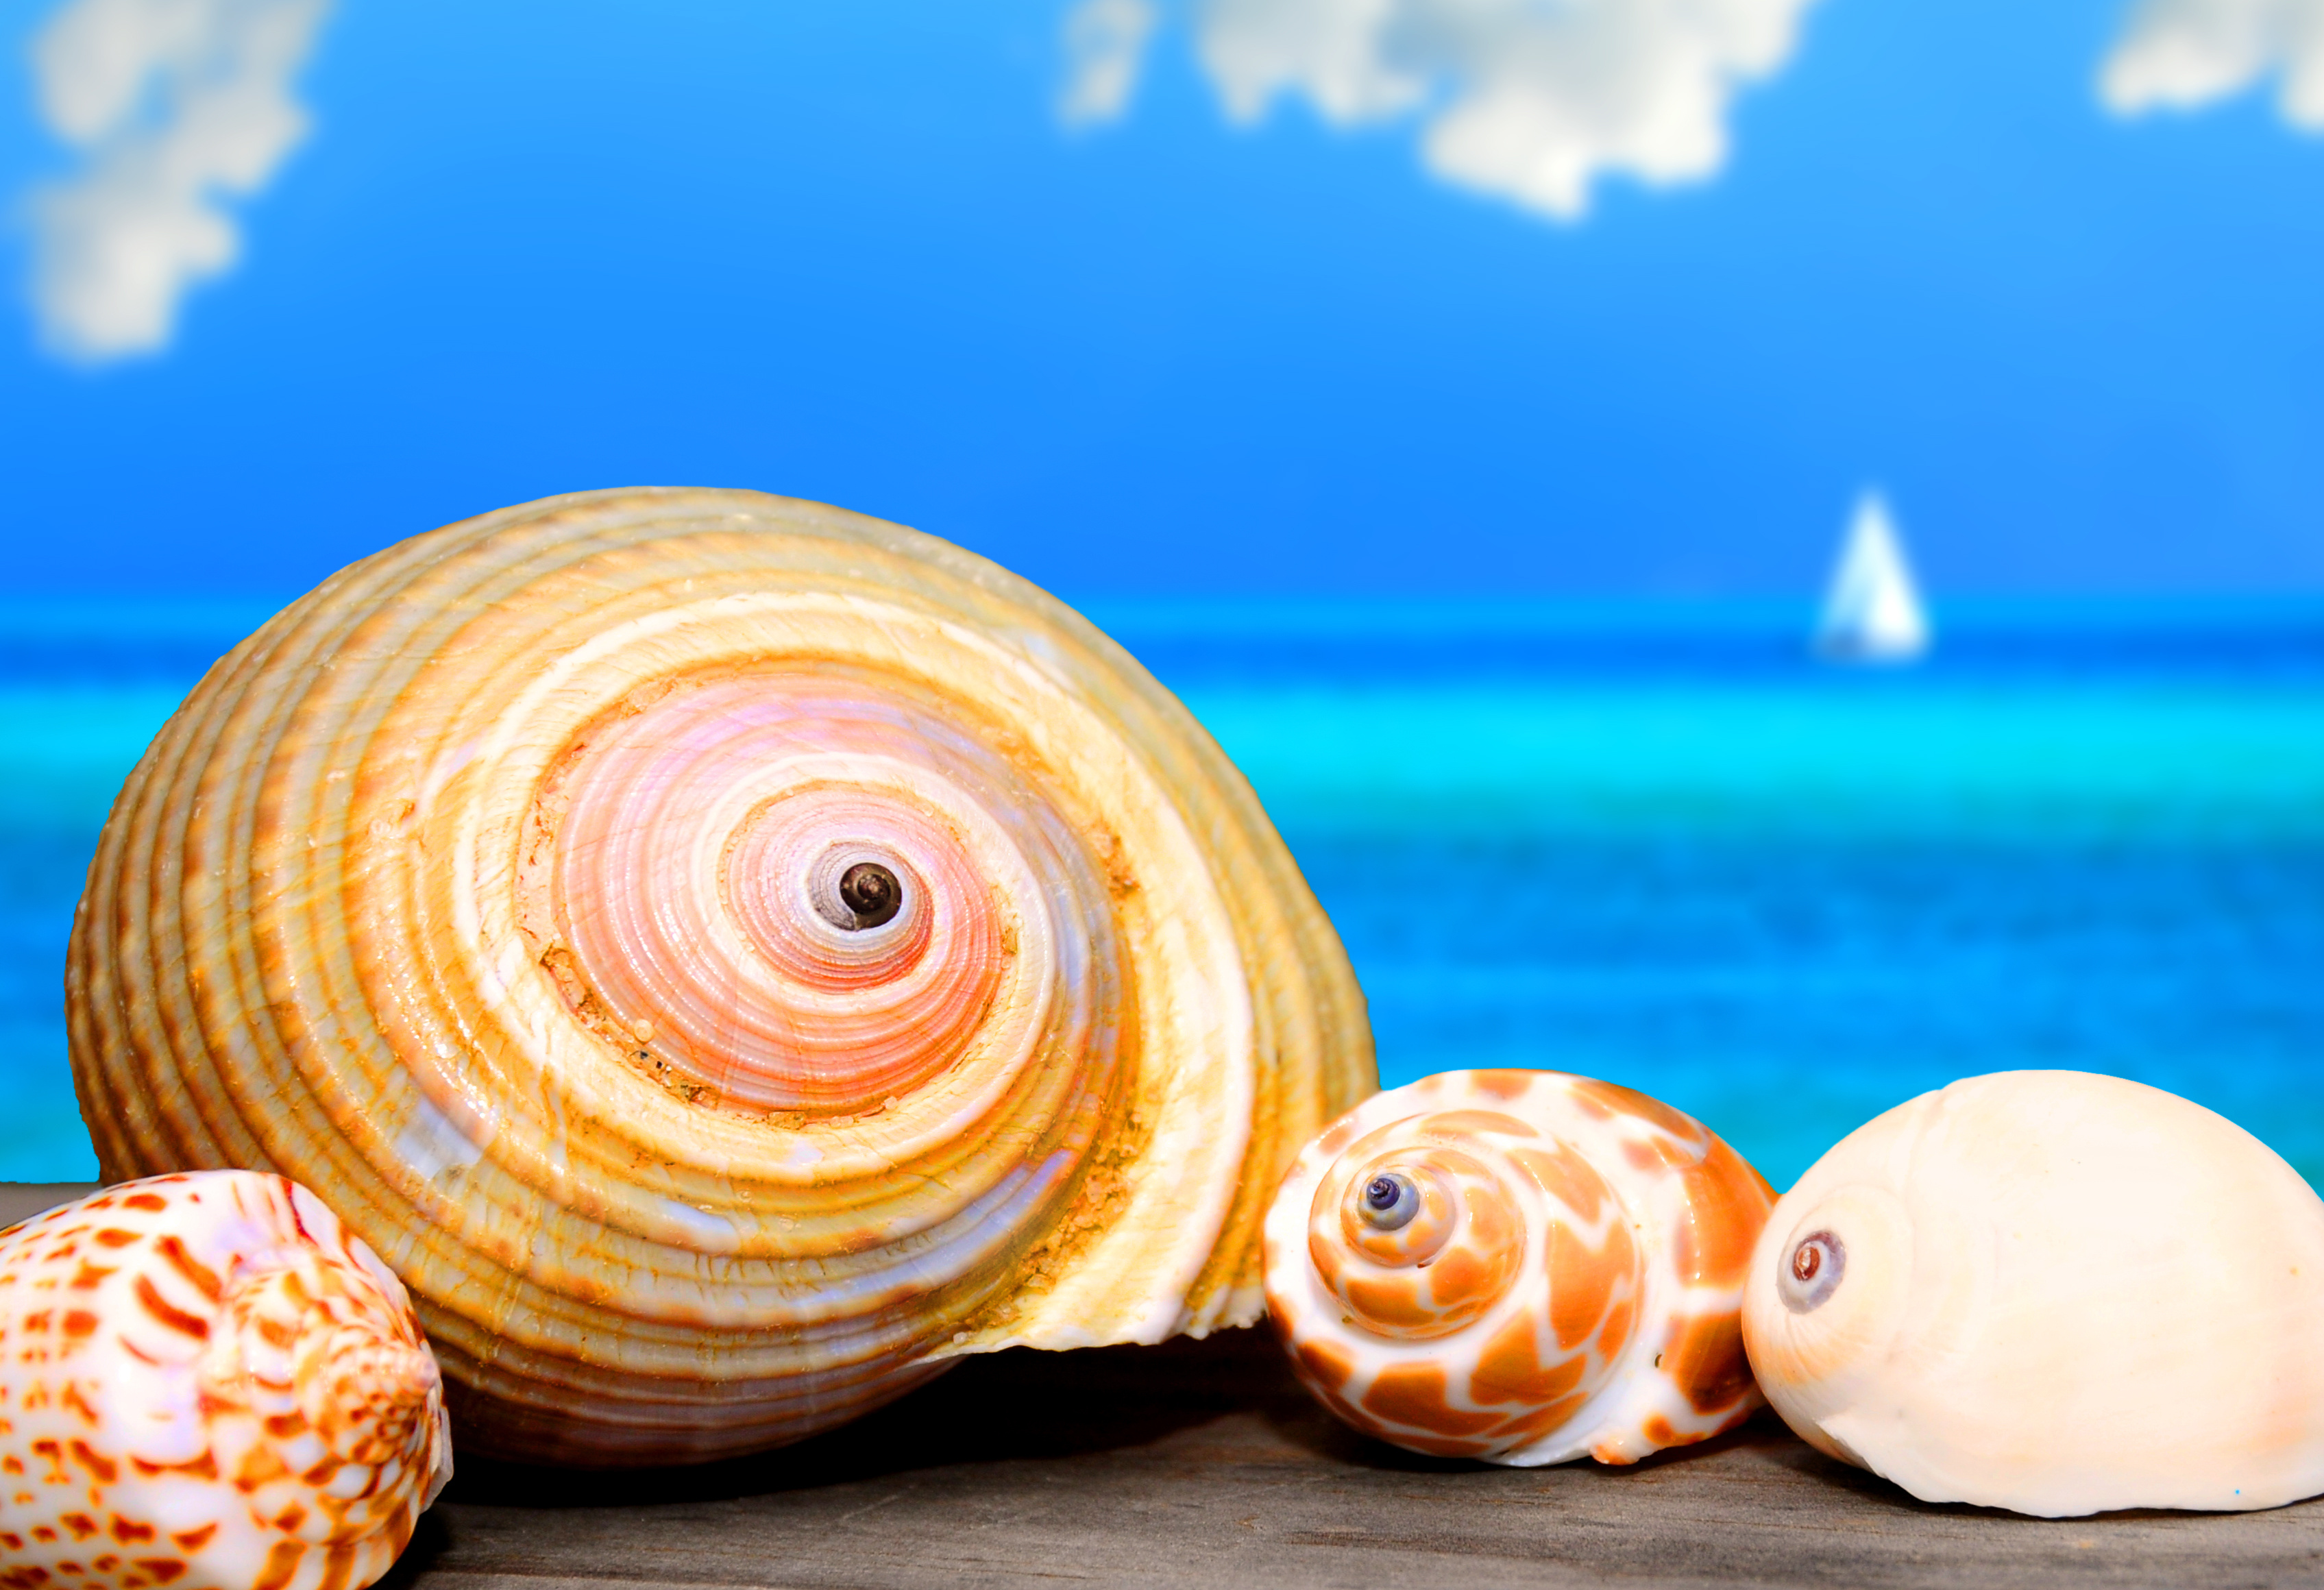 貝殻が青い海と空と一緒に写っている写真